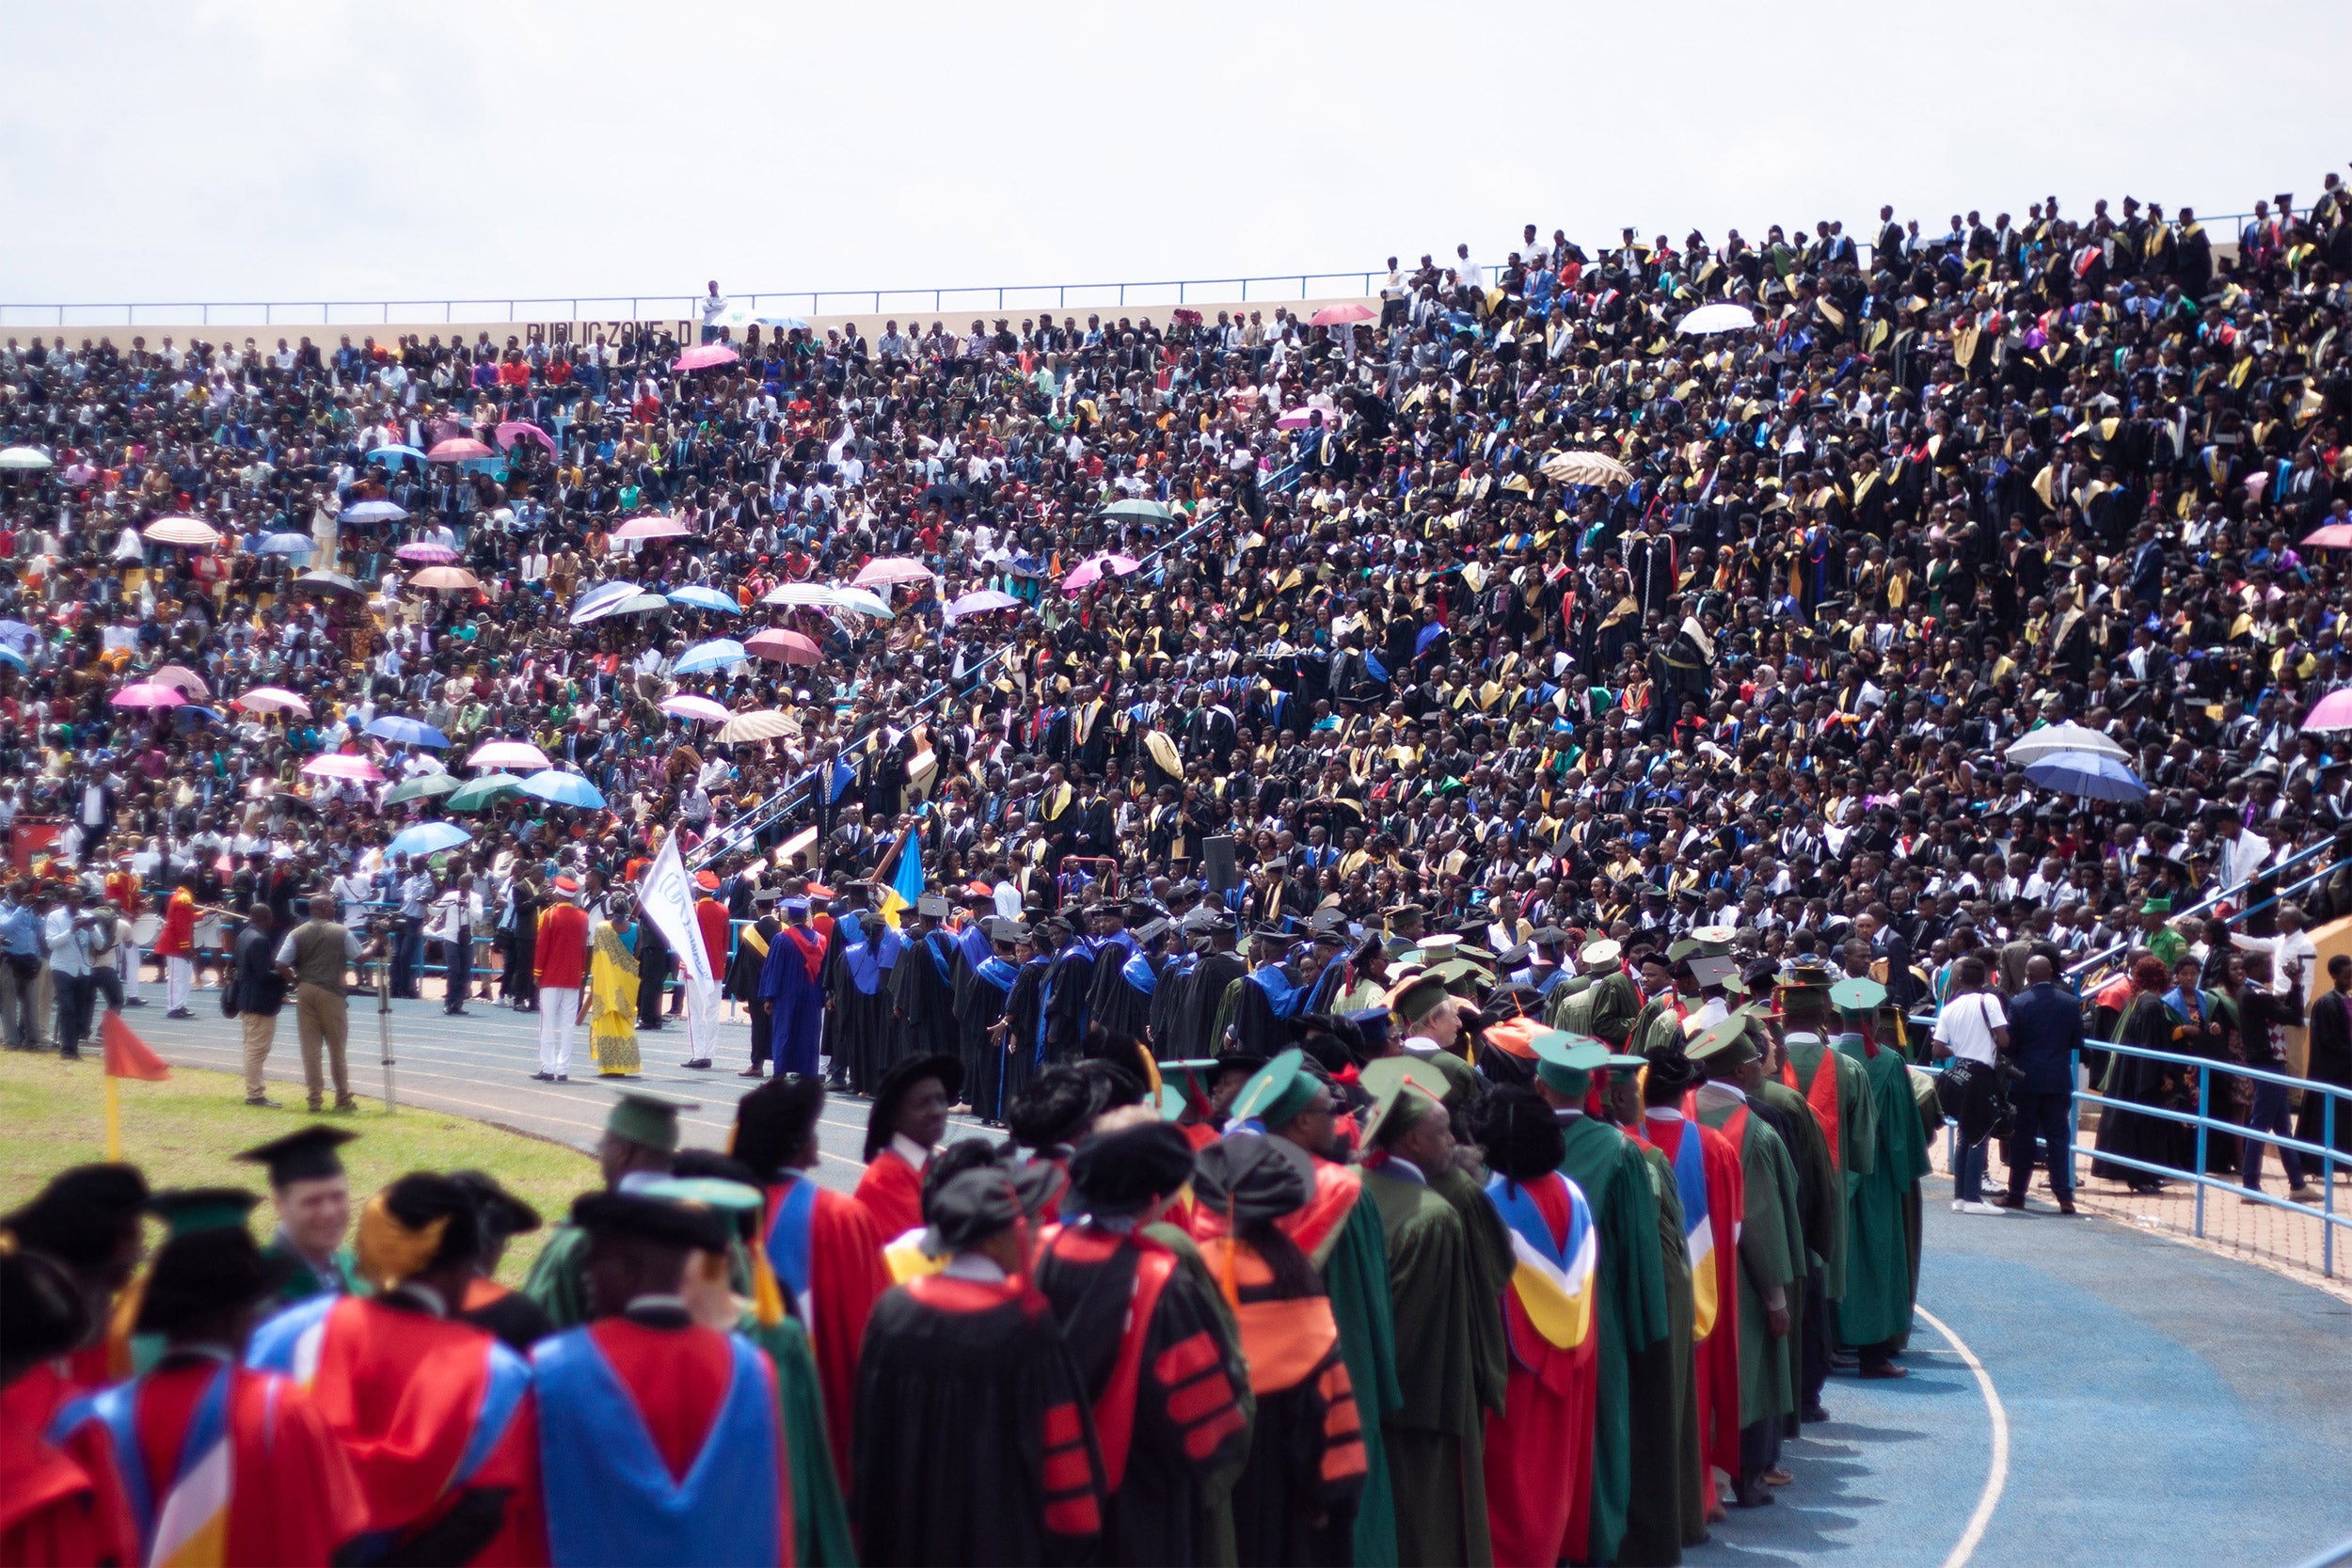 University of Rwanda dental students graduate